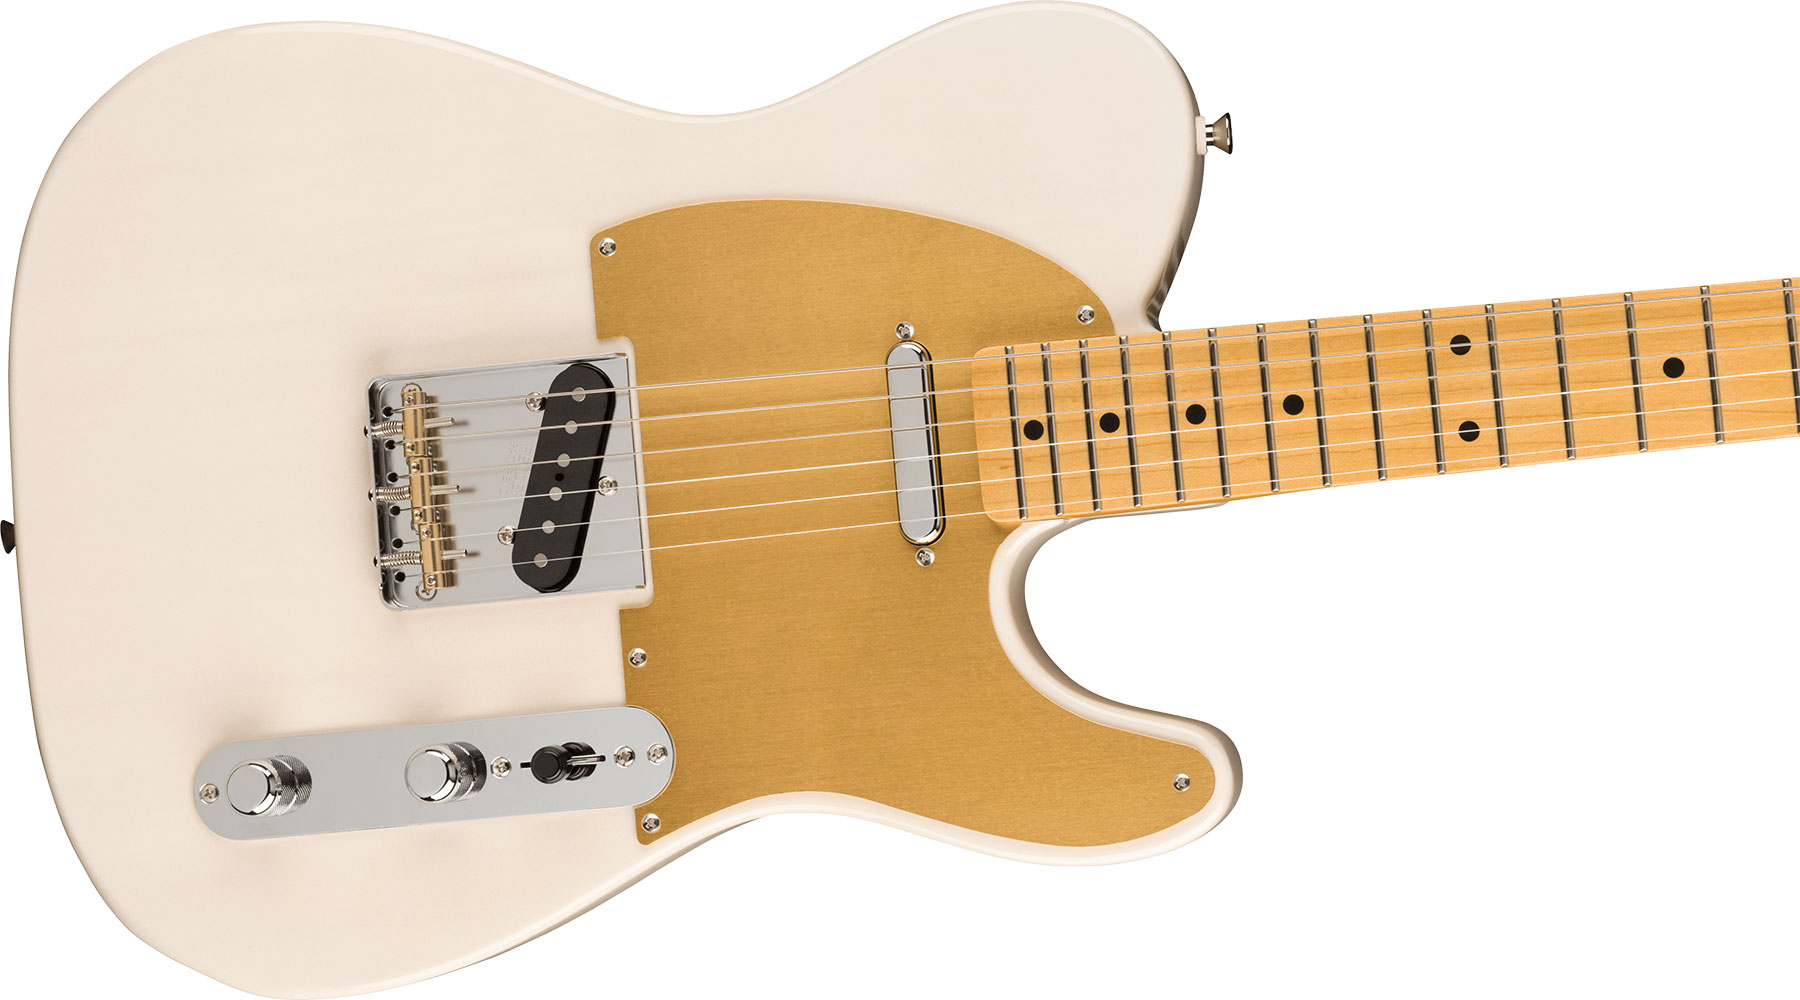 Fender Tele '50s Jv Modified Jap 2s Ht Mn - White Blonde - Guitarra eléctrica con forma de tel - Variation 2